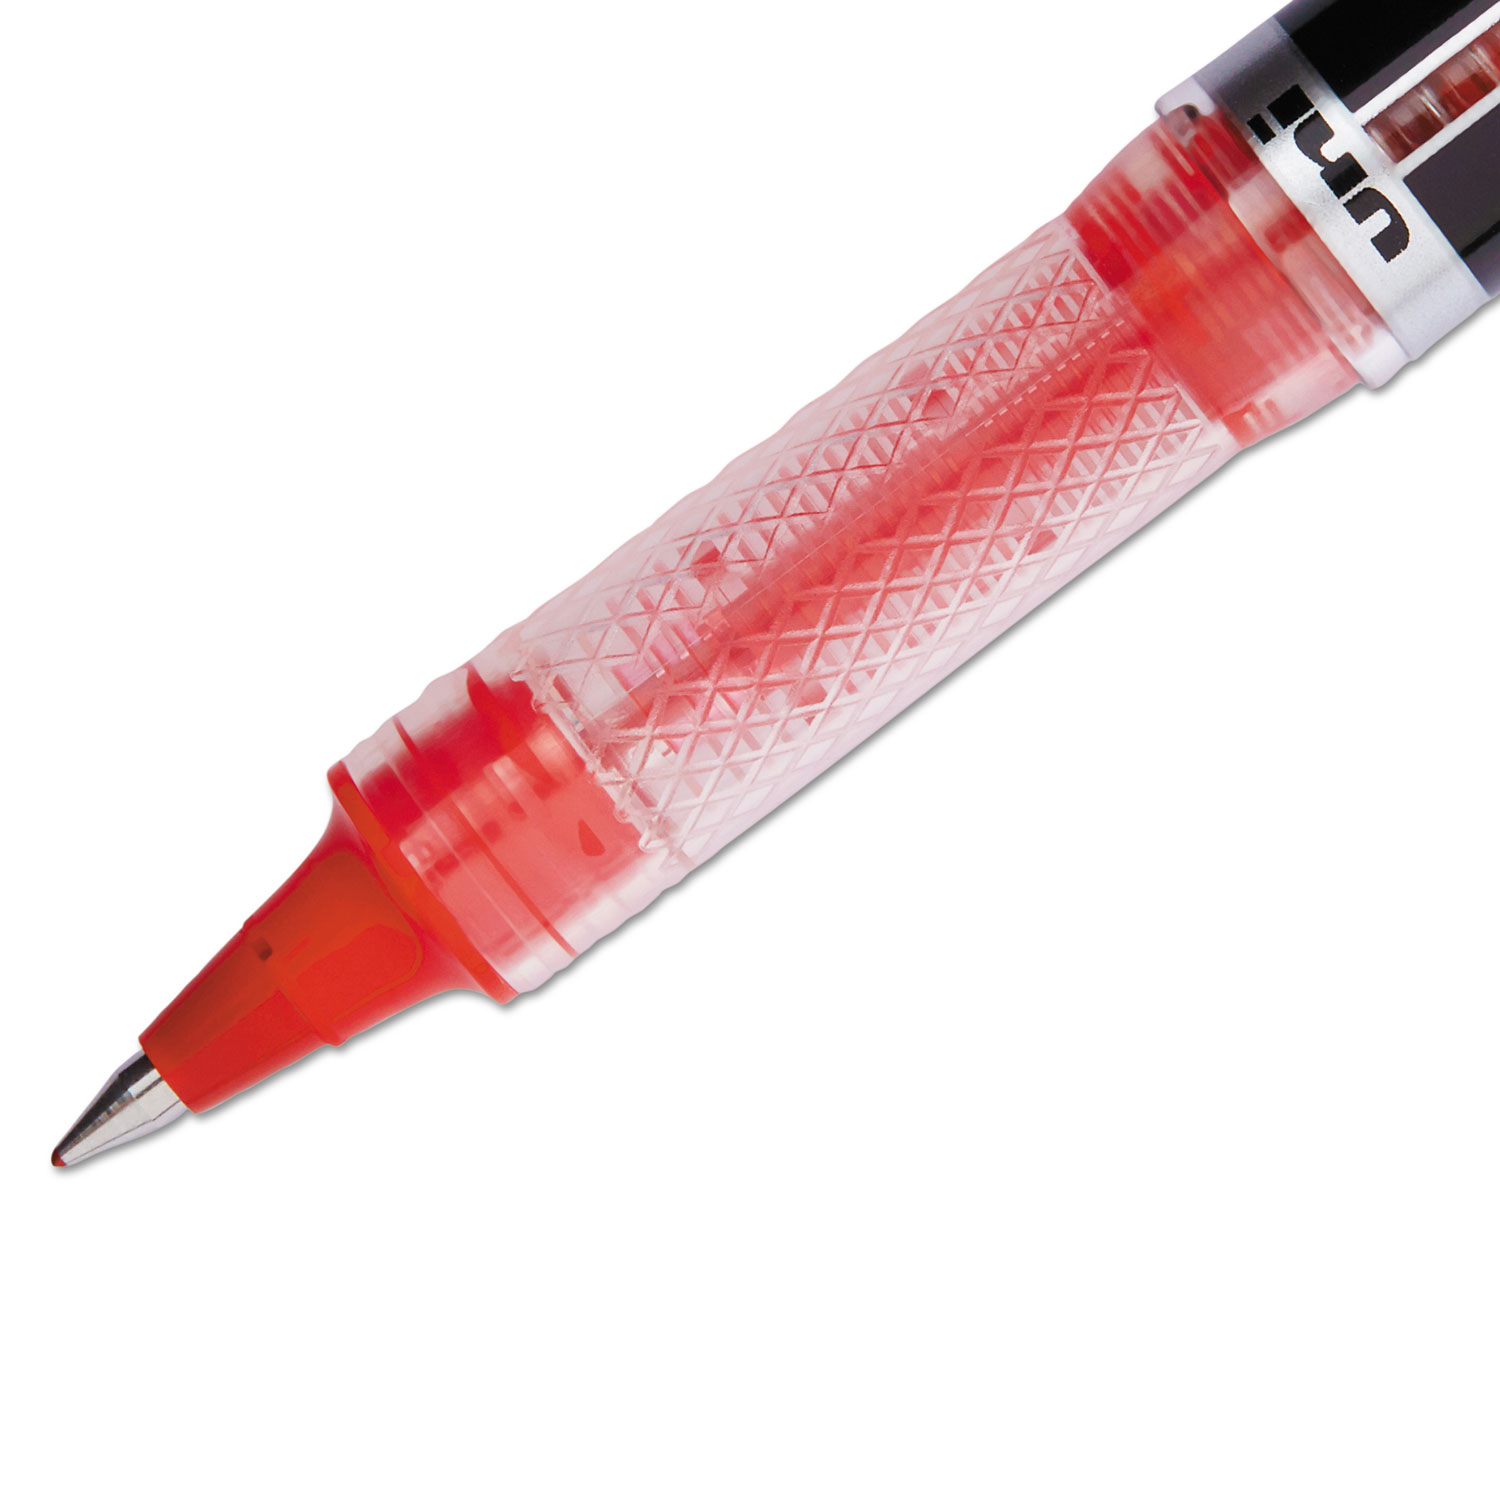 VISION ELITE Roller Ball Stick Waterproof Pen, Red Ink, Super Fine